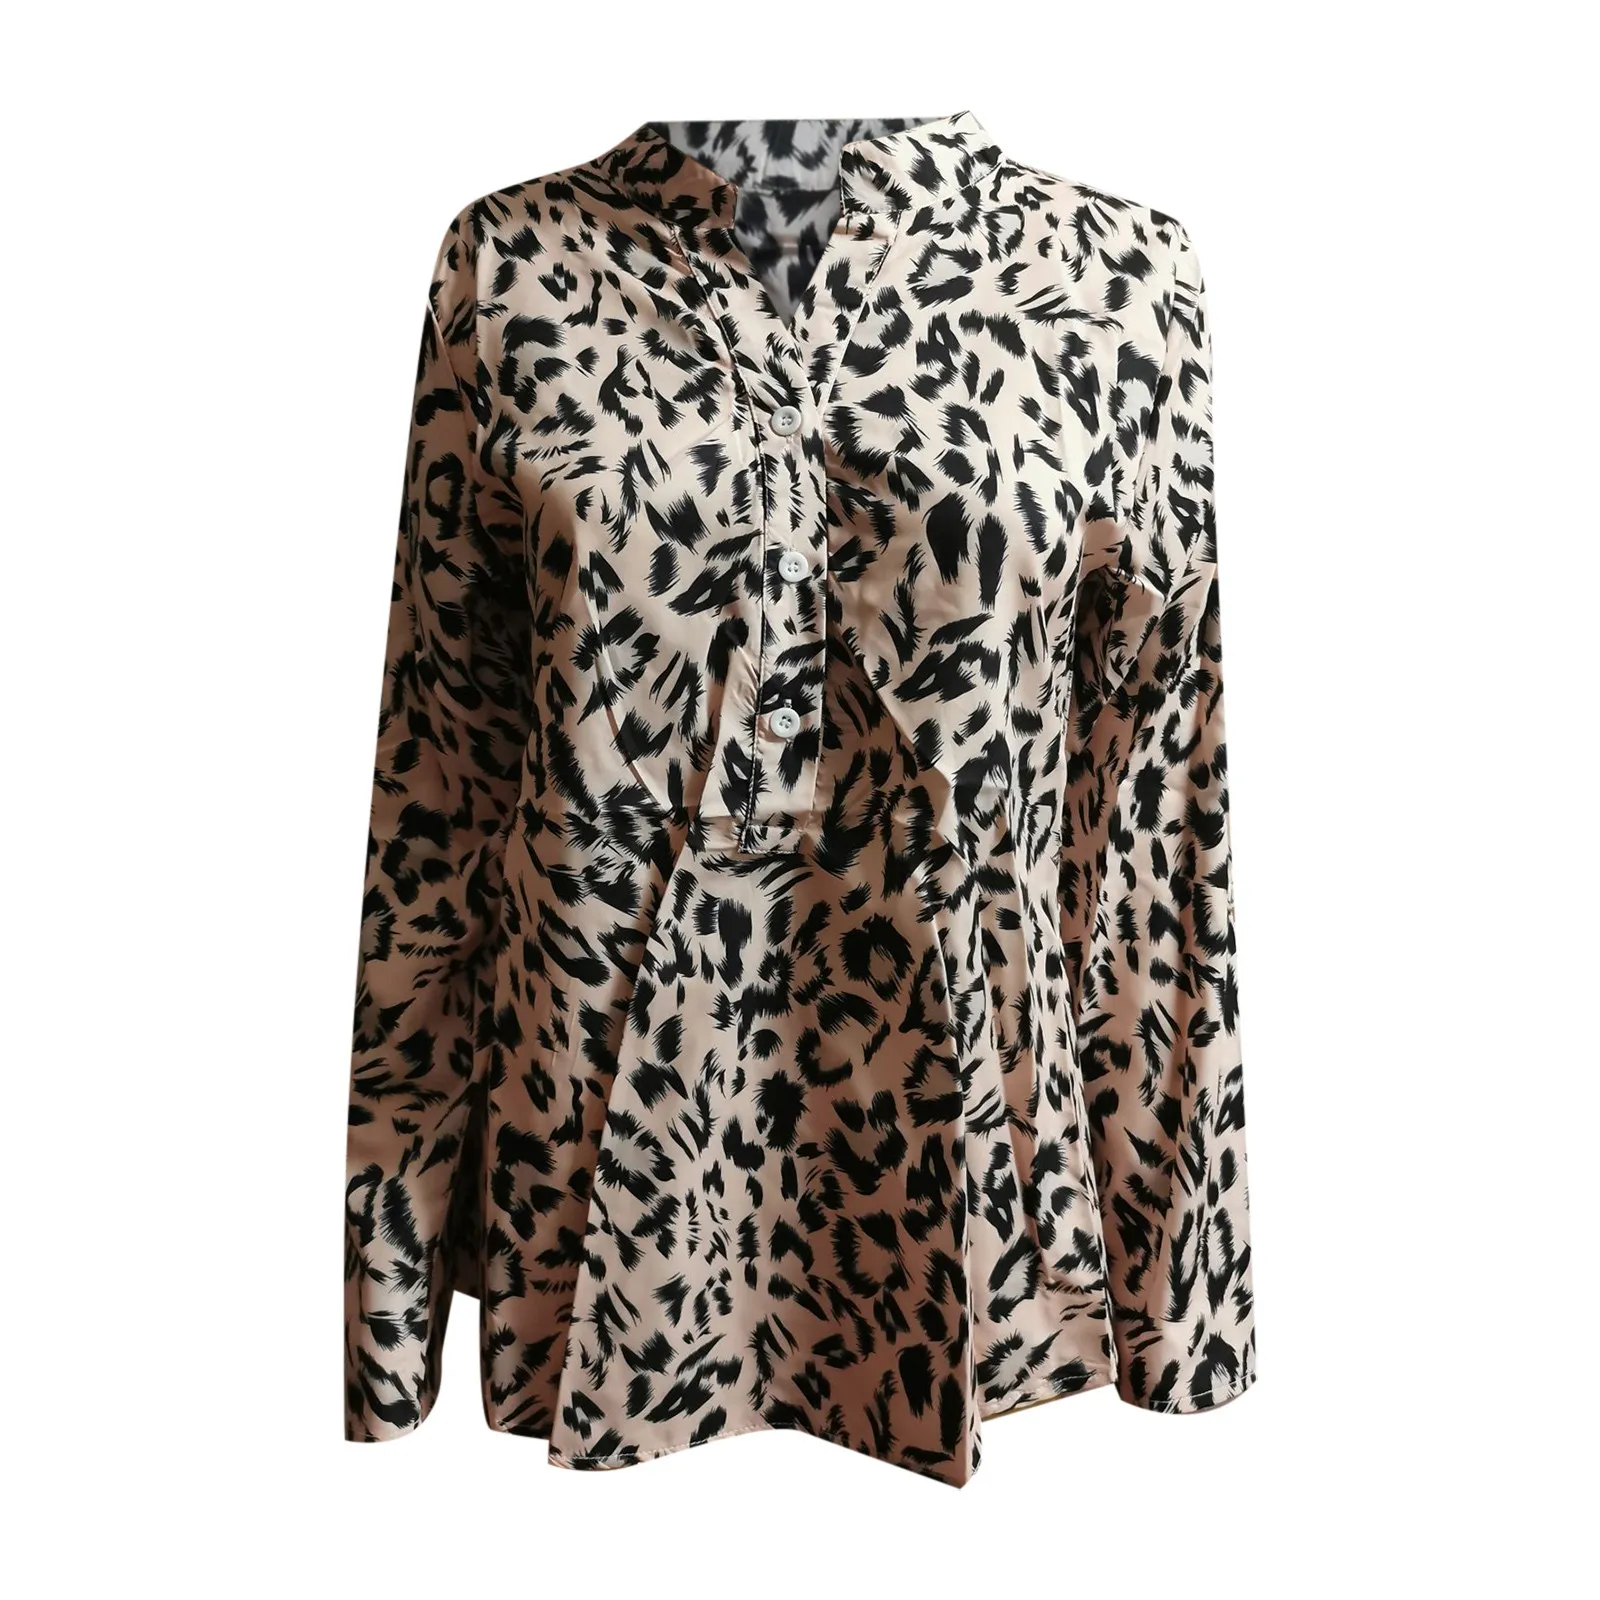 Camicette o top da donna Camicetta in chiffon a maniche lunghe casual elegante con stampa leopardata sexy da donna alla moda ??? ???????